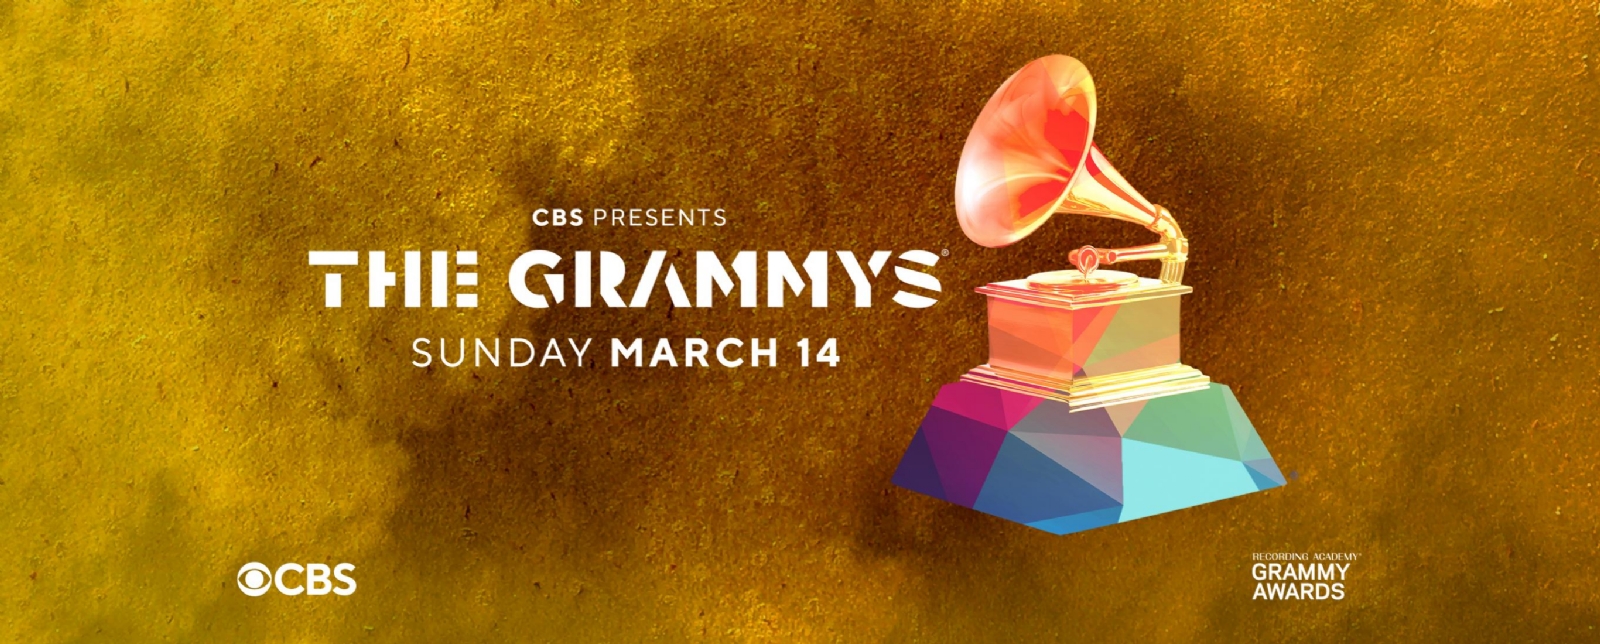 Premios Grammy 2021: Dónde y a qué hora ver la ceremonia de premiación a lo mejor de la música